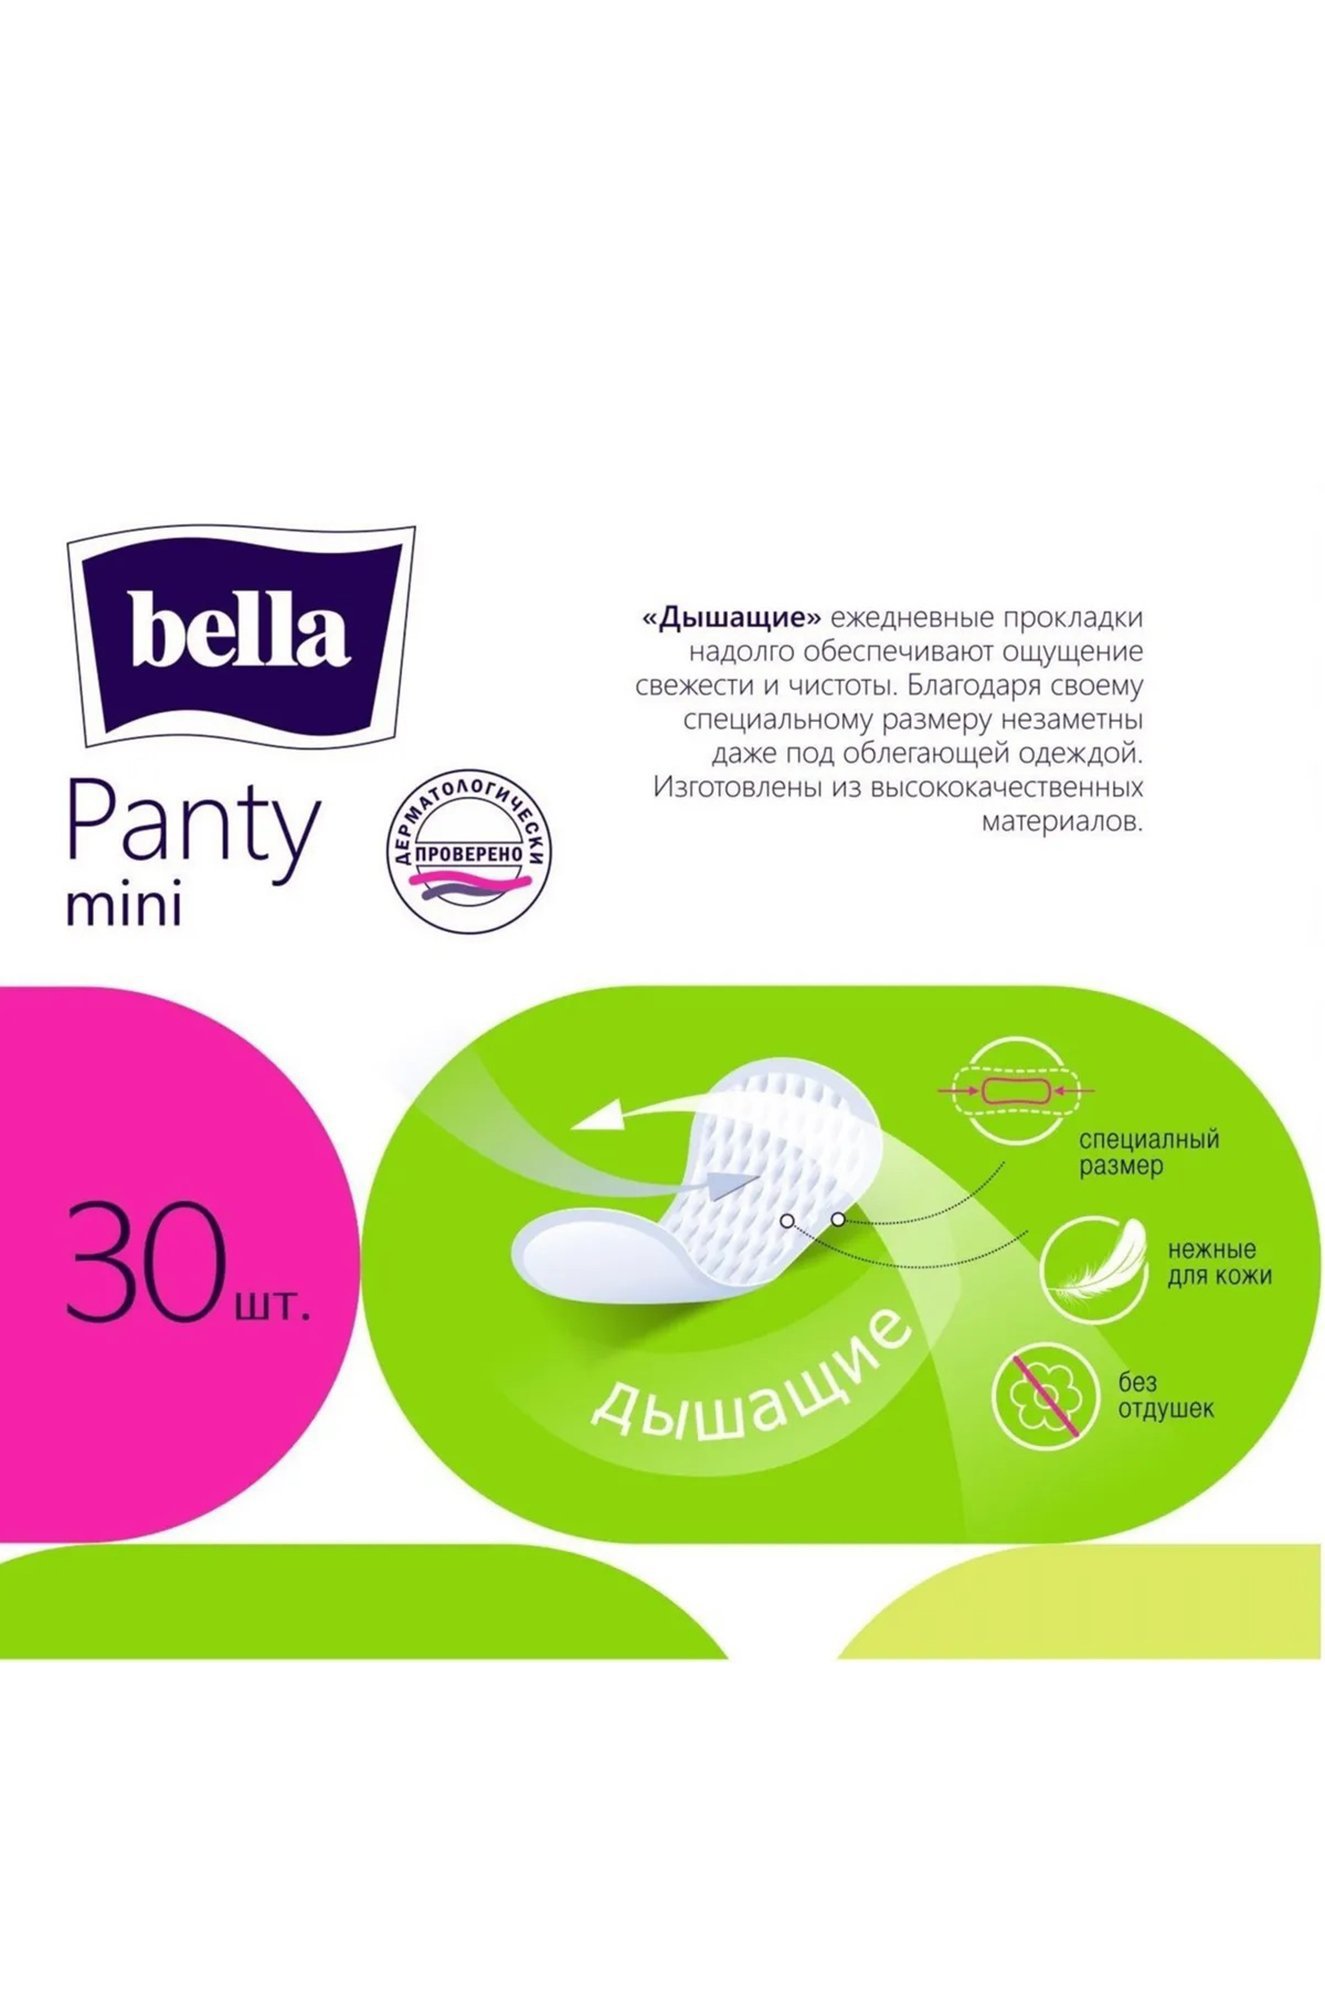 Женские ежедневные прокладки bella panty mini 30 шт. Bella